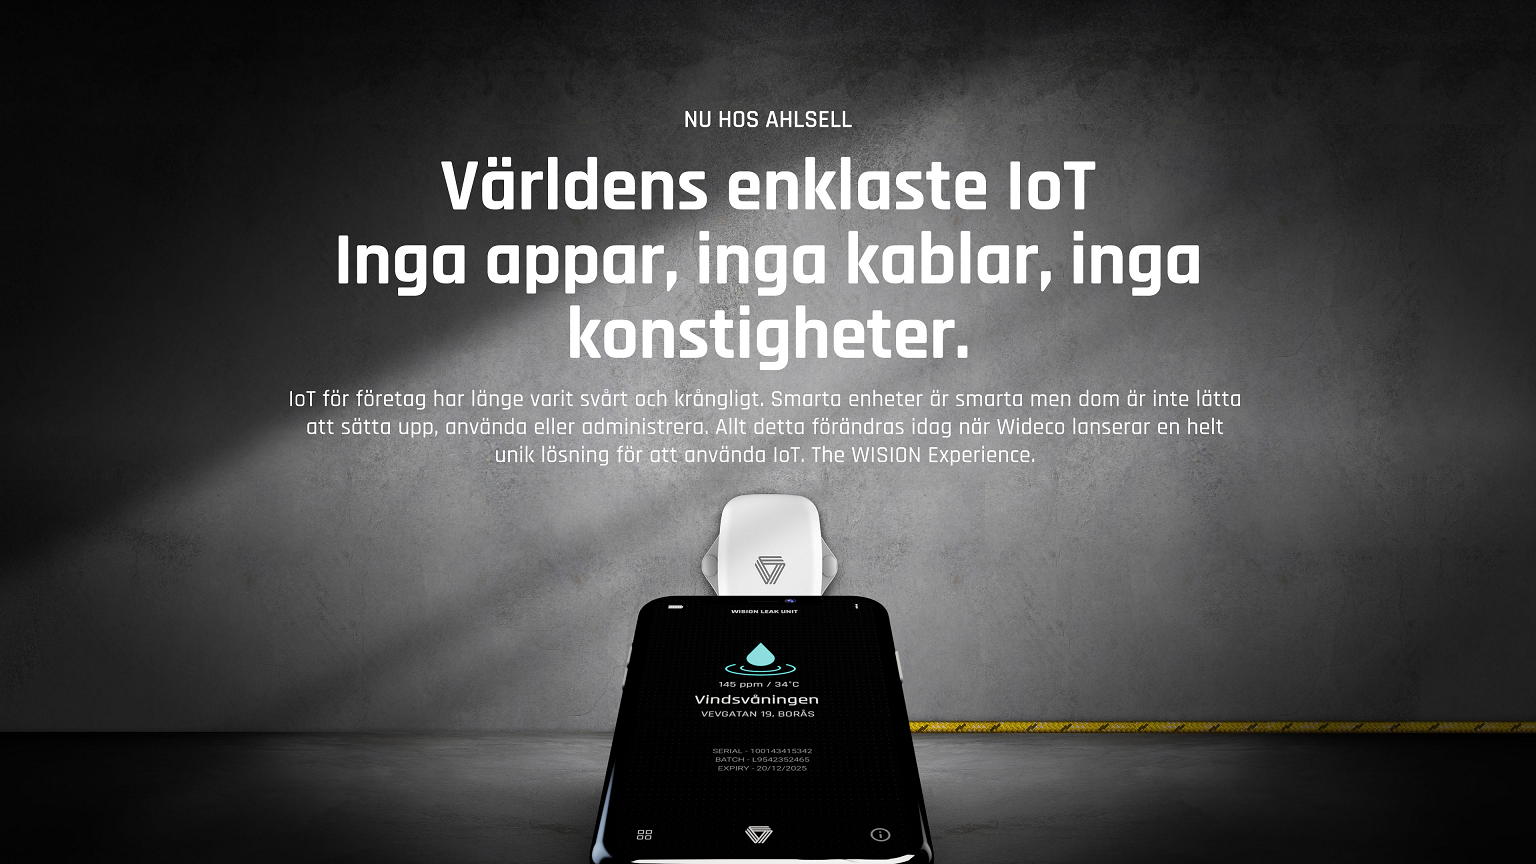 Wideco lanserar ”Världens enklaste IoT” utan appar och kablar med Ahlsell som första återförsäljaren i Norden.